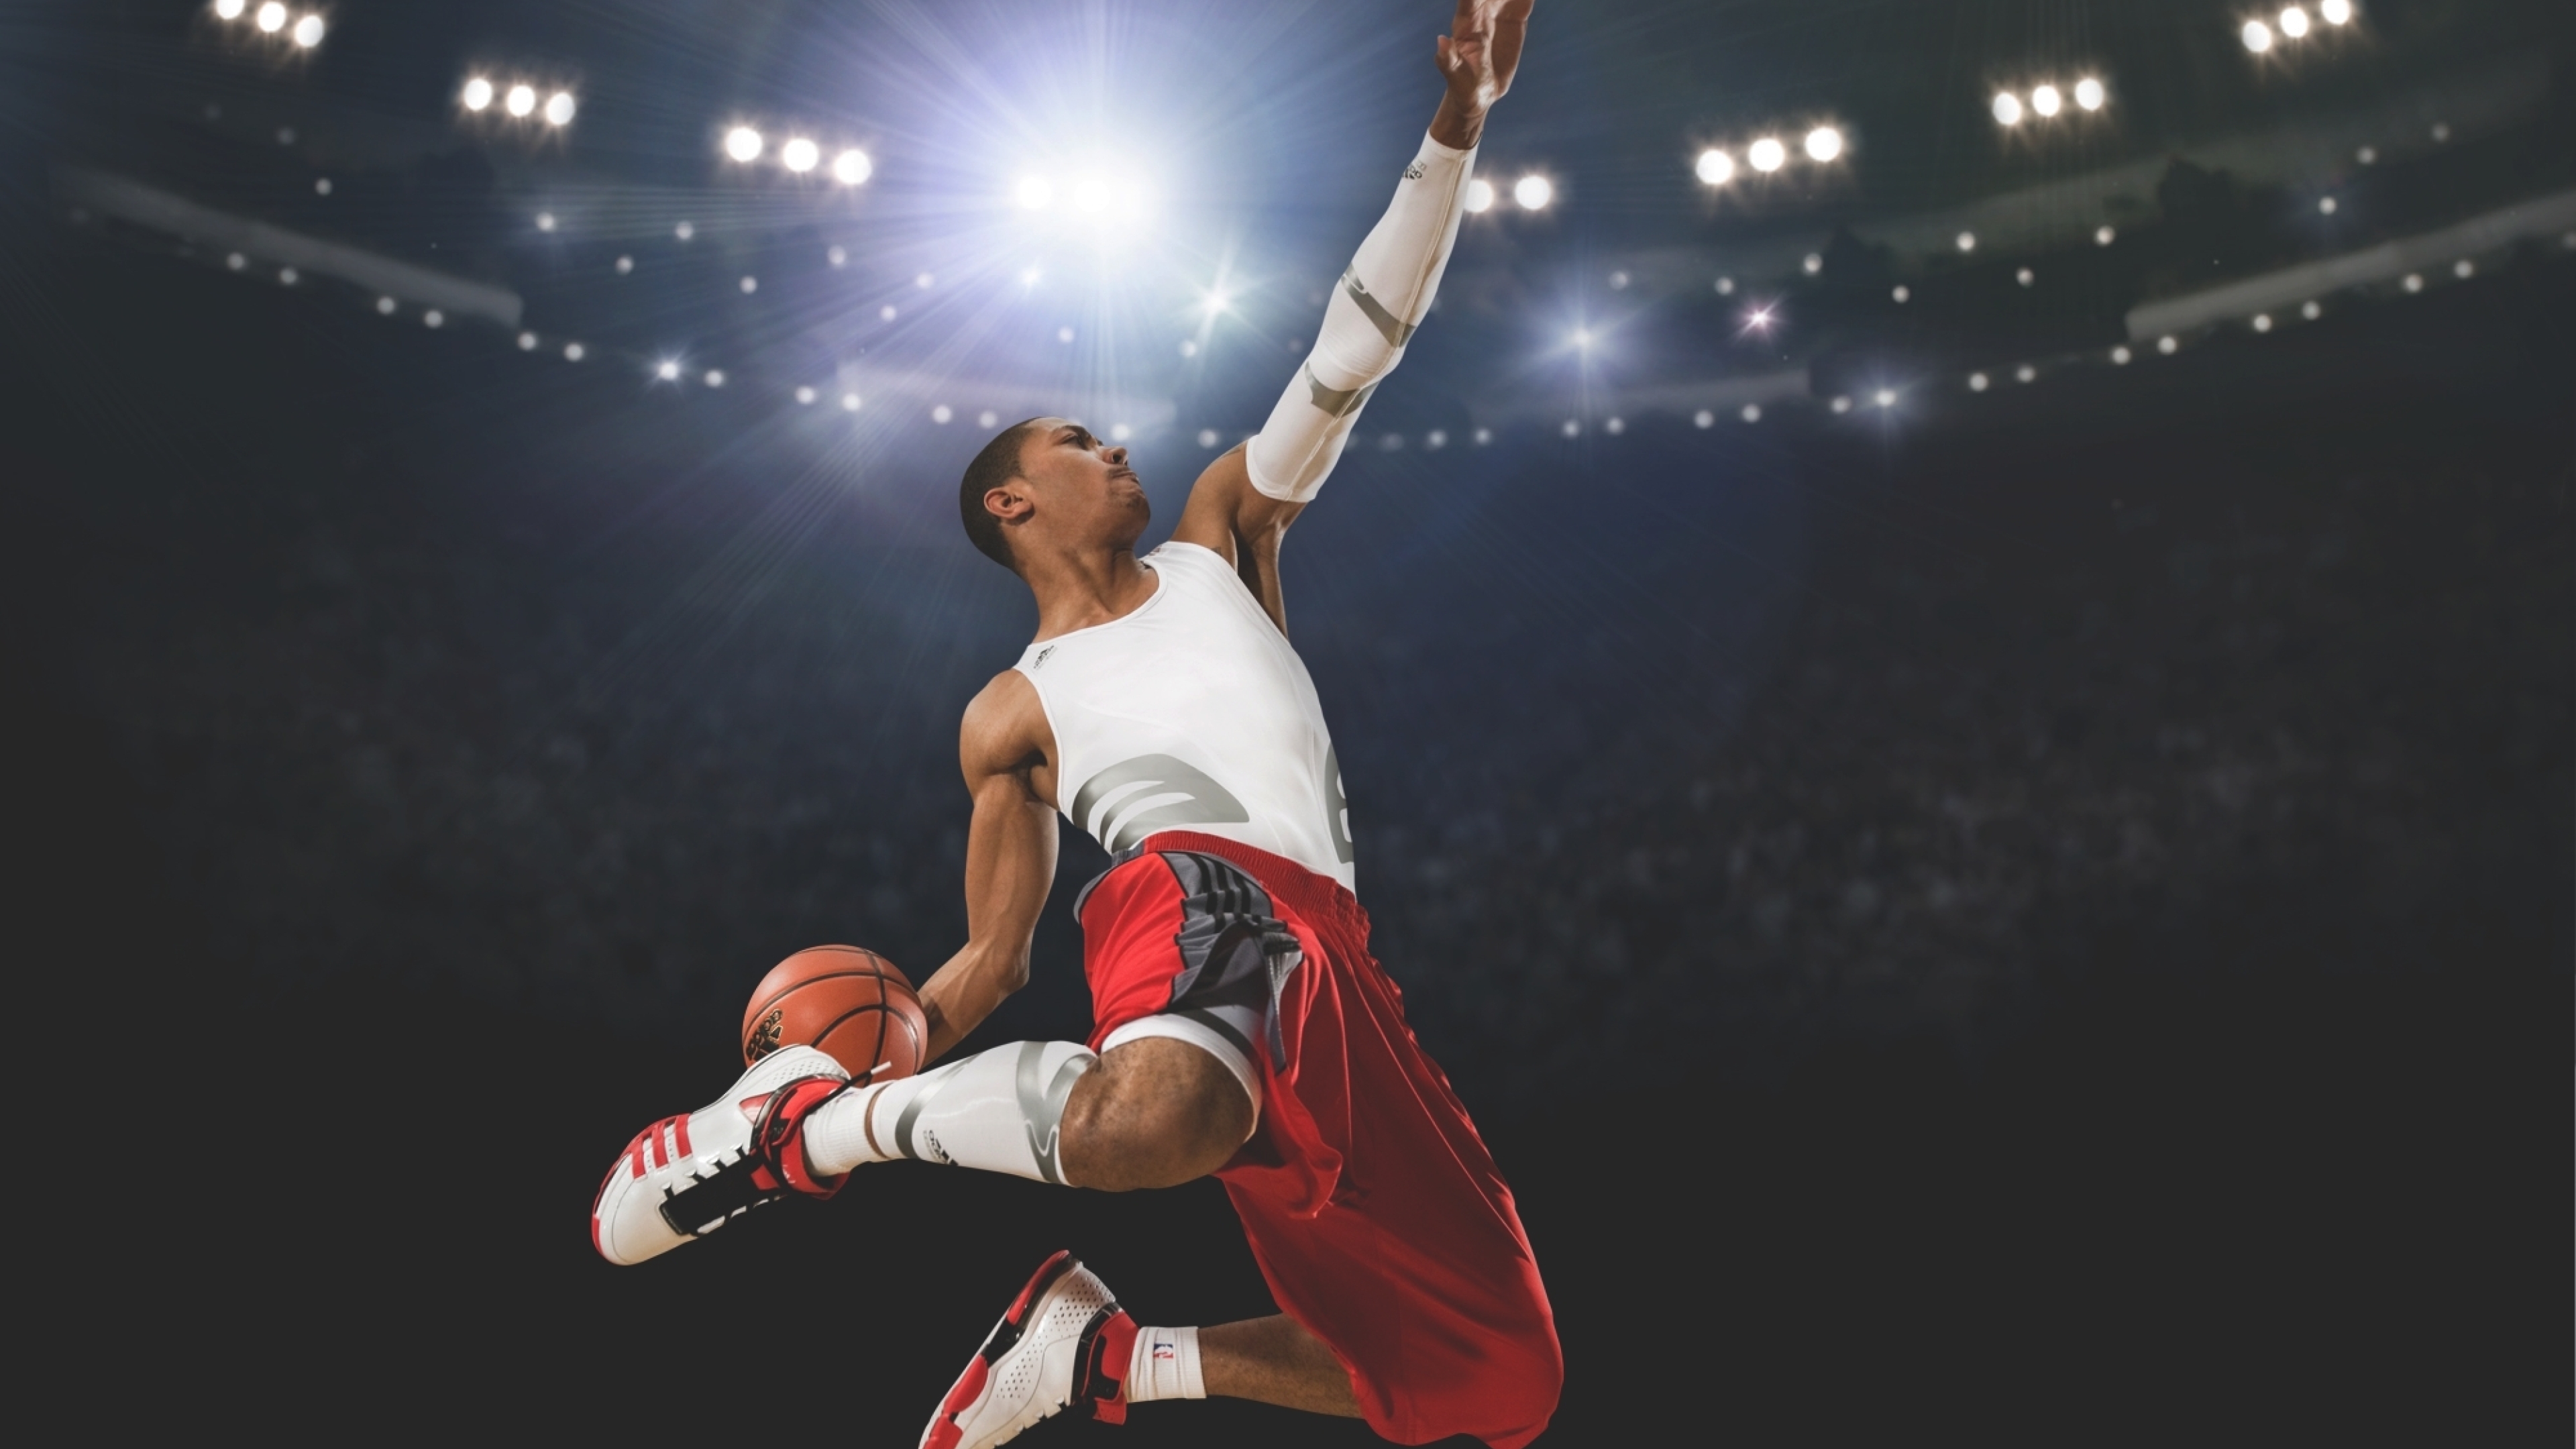 3840x2160 Derrick Rose Slam Dunk Basketball 4k Wallpaper Hd Images, Photos, Reviews